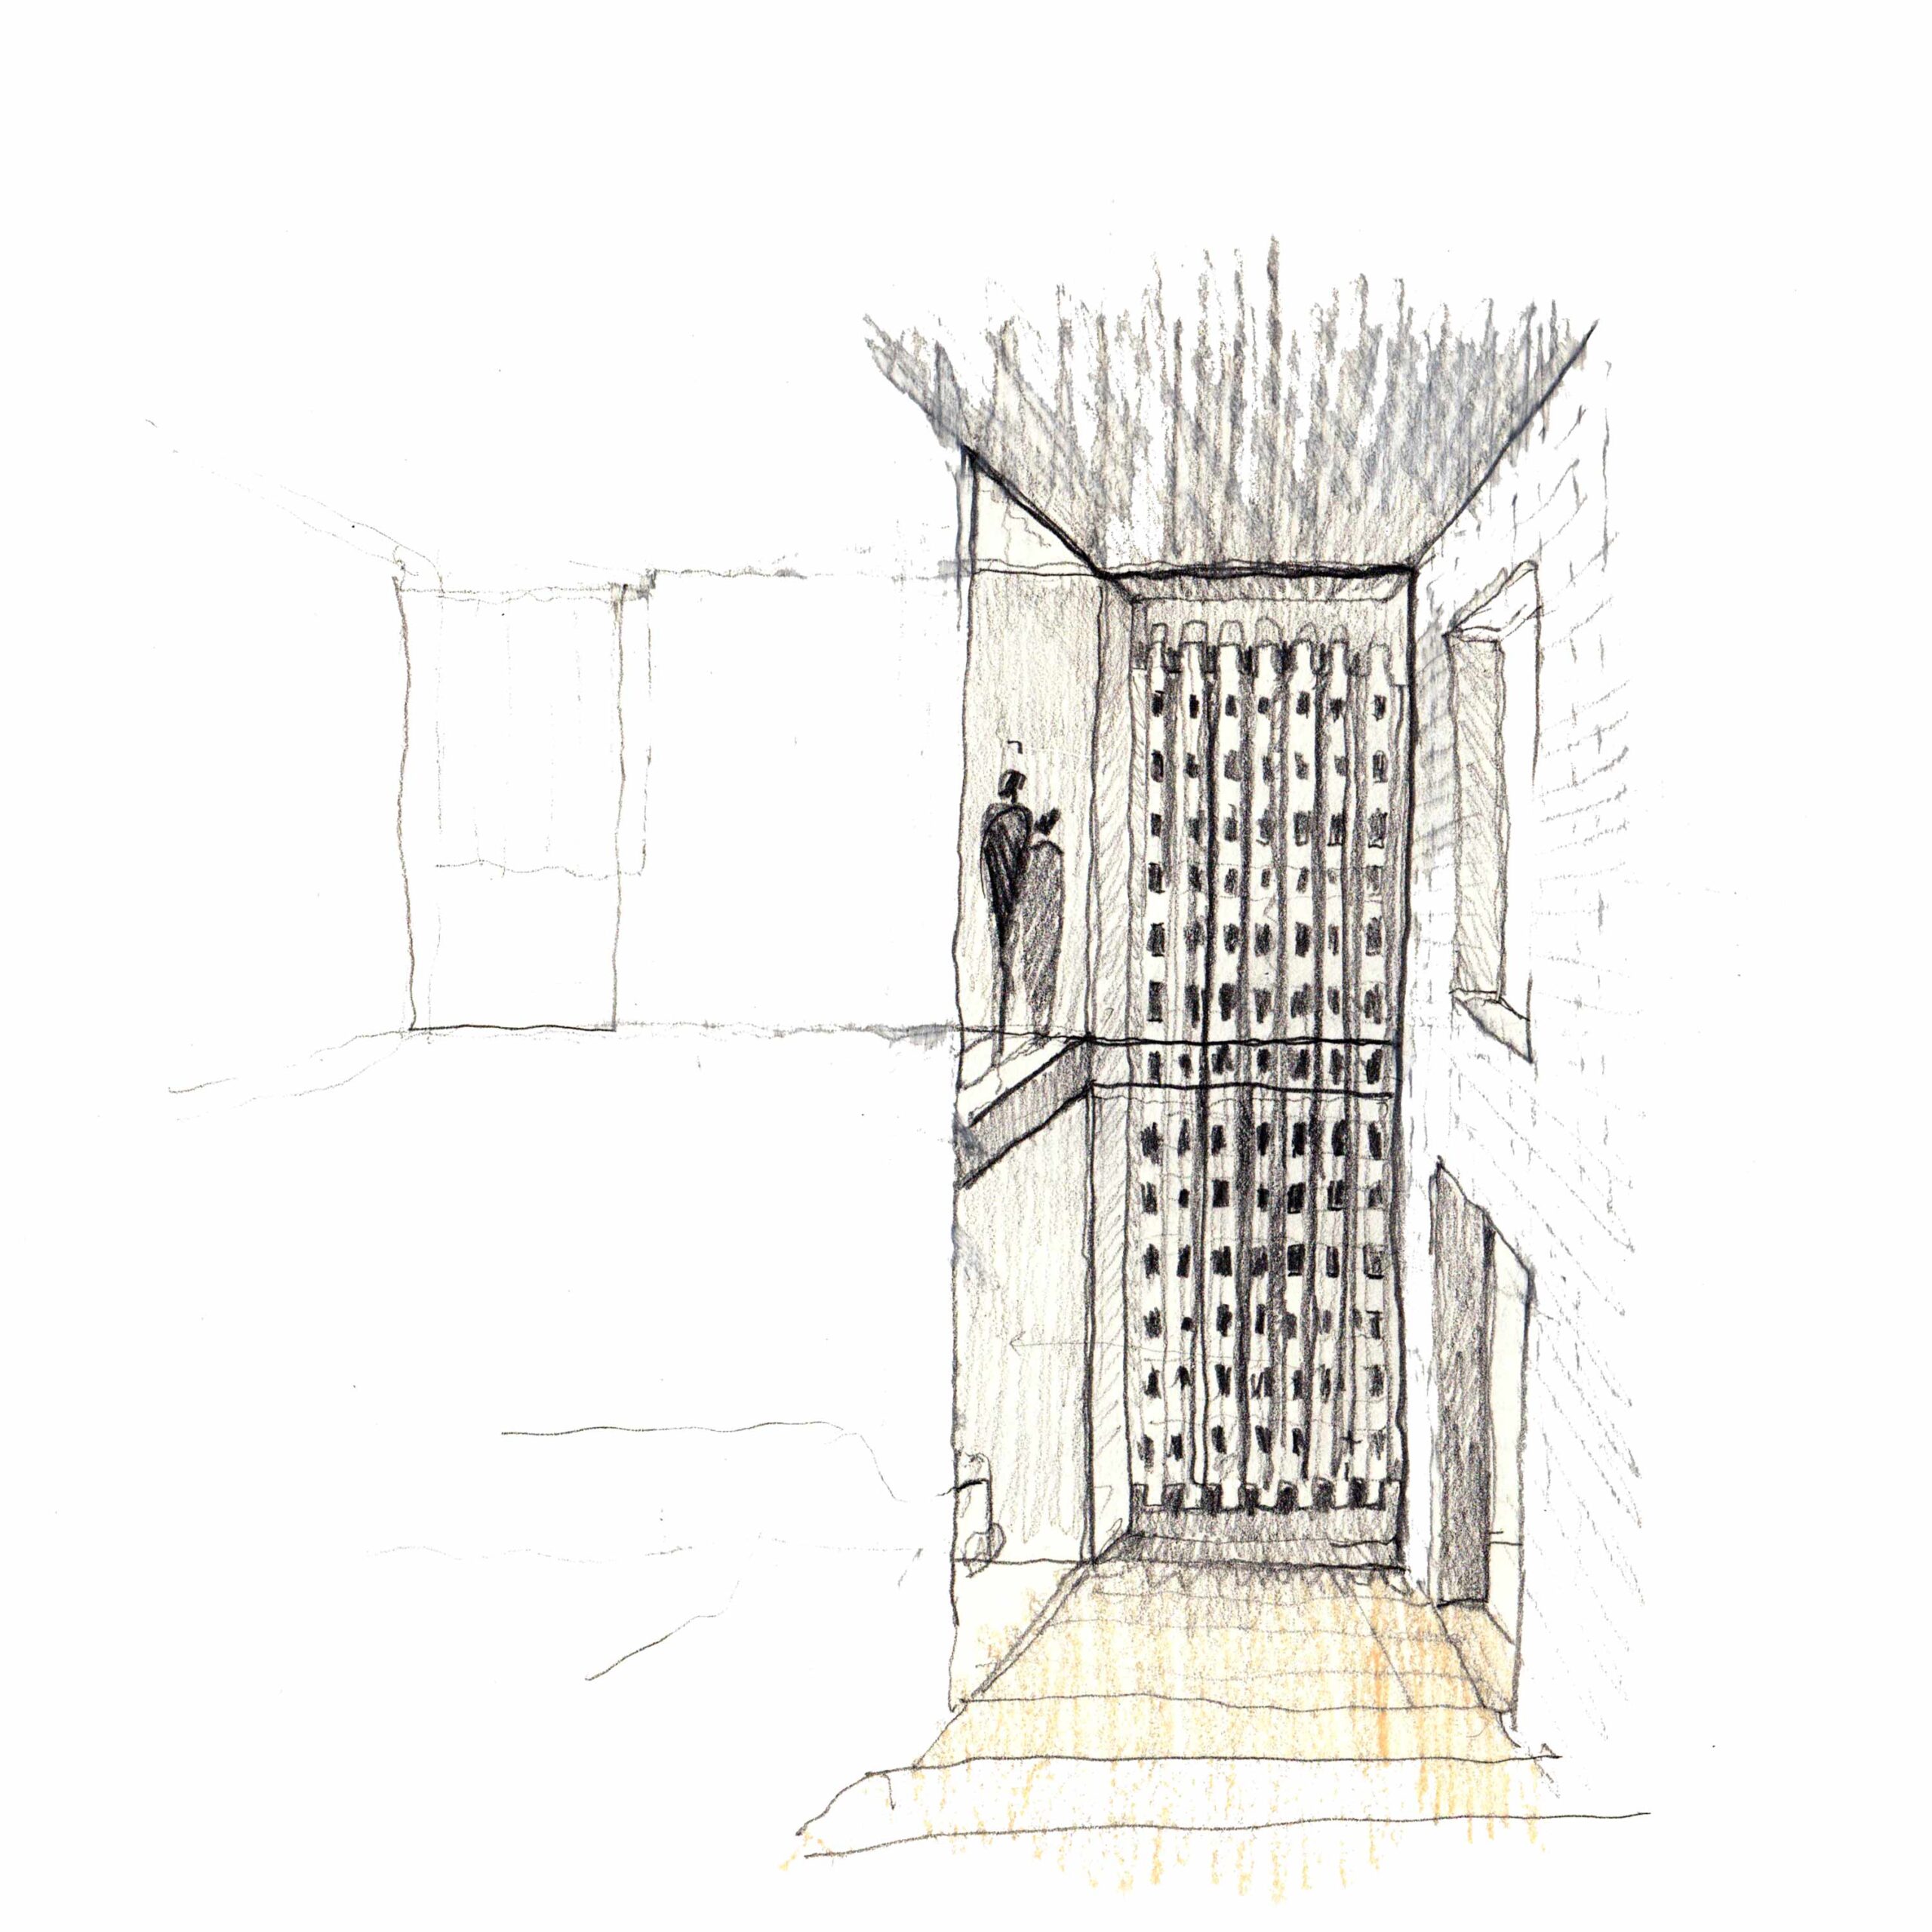 Skizze des Treppenhauses und der gitterförmigen Ziegelsteinfassade von innen.